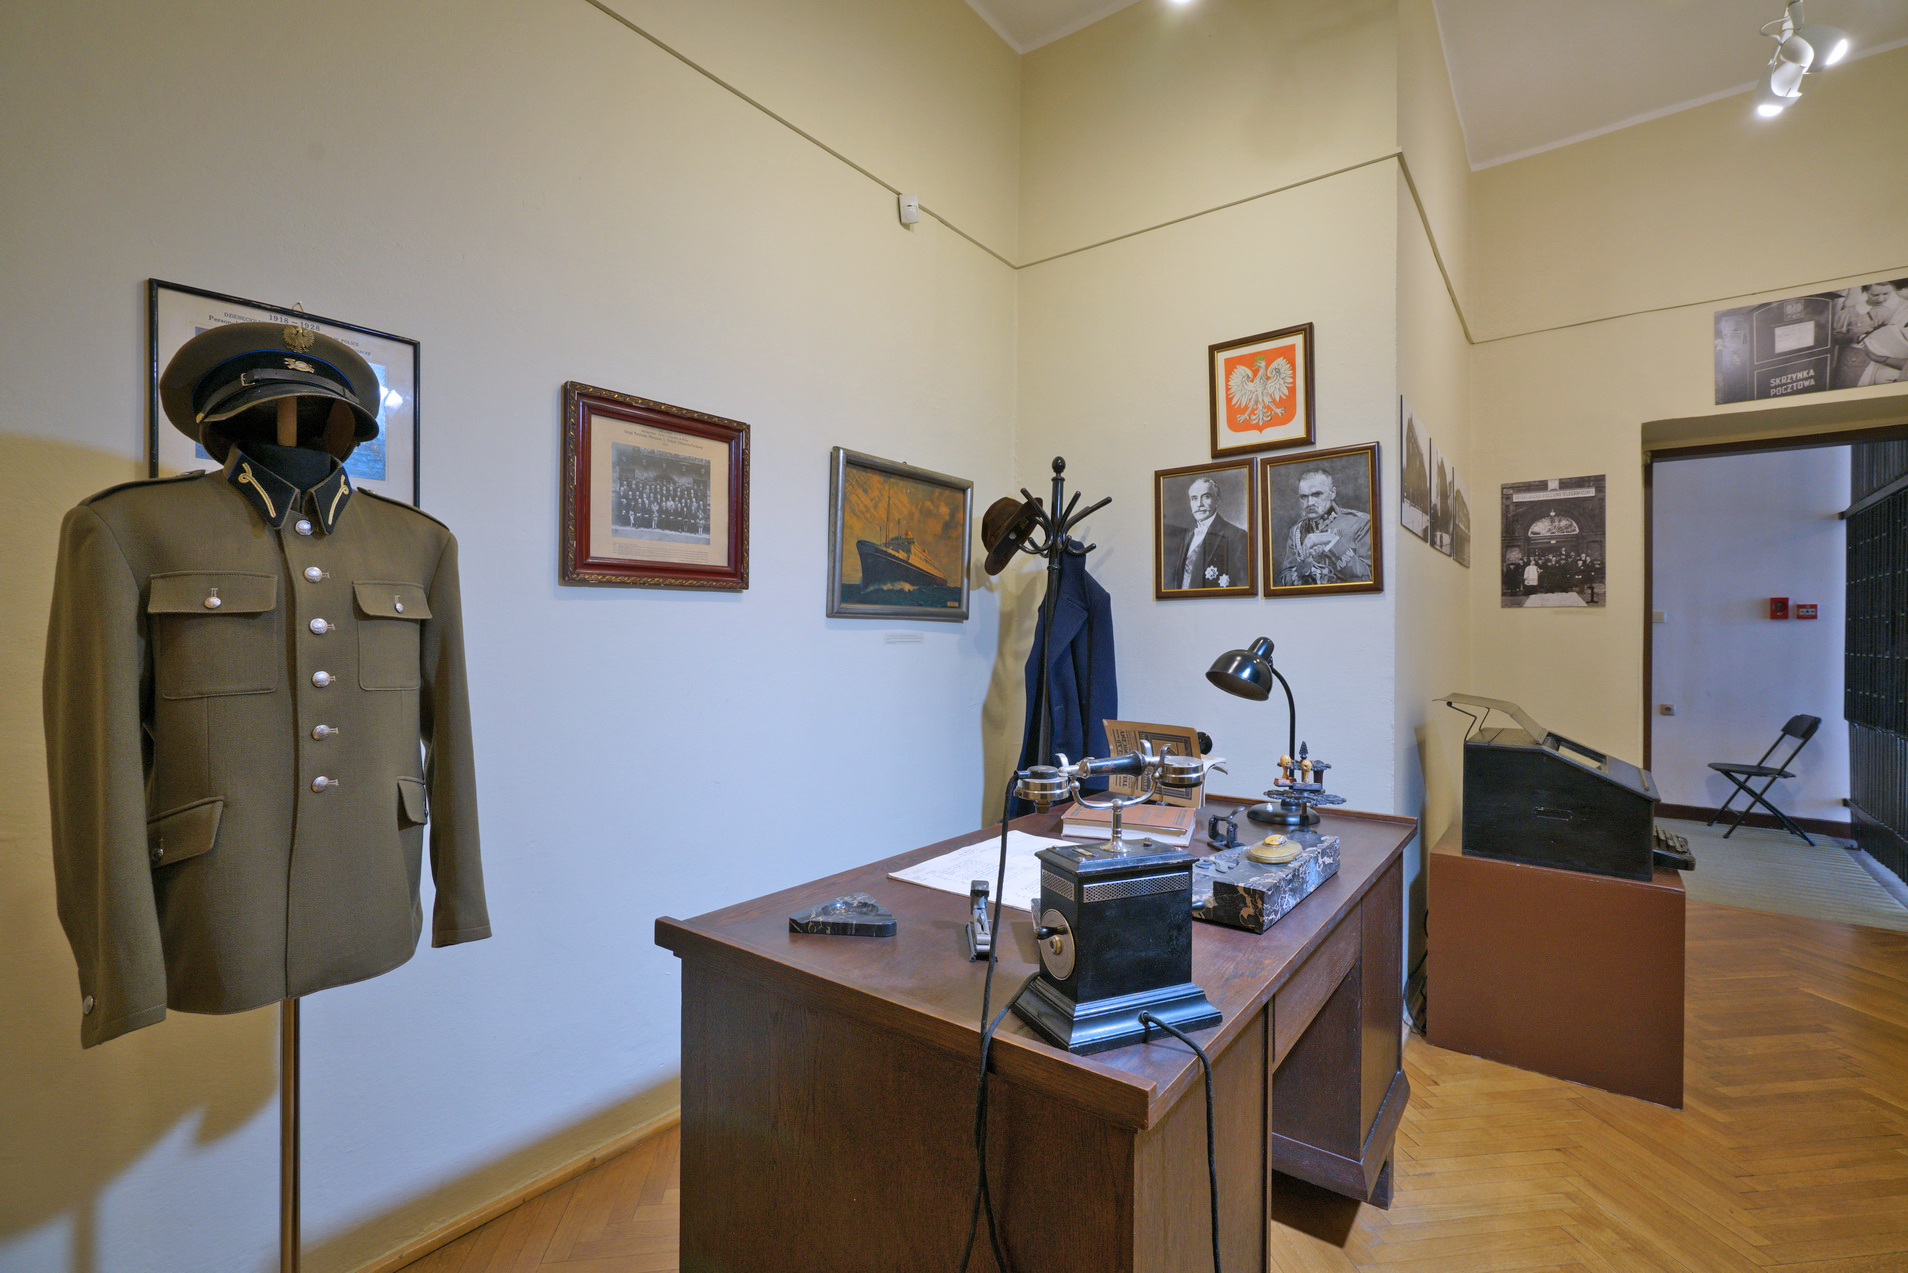 Wnętrze Pokoju Naczelnika. Drewniane biurko, na nim telefon, lampka, przybory do pisania. Po lewej stojak z mundurem wojskowym. Na ścianach zdjęcia, obrazy, godło Polski.